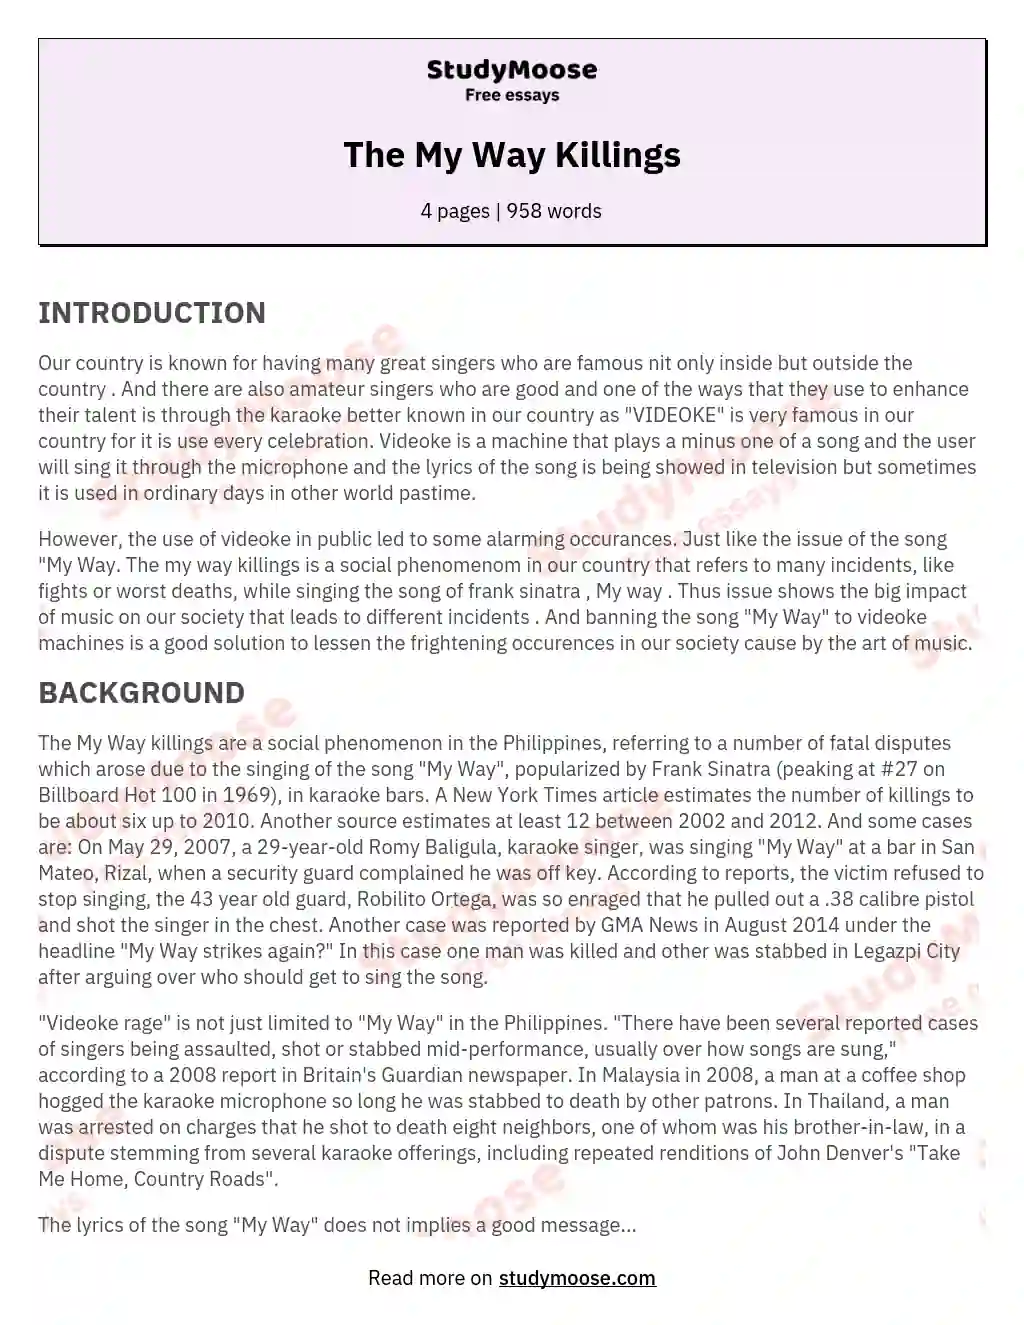 The My Way Killings essay